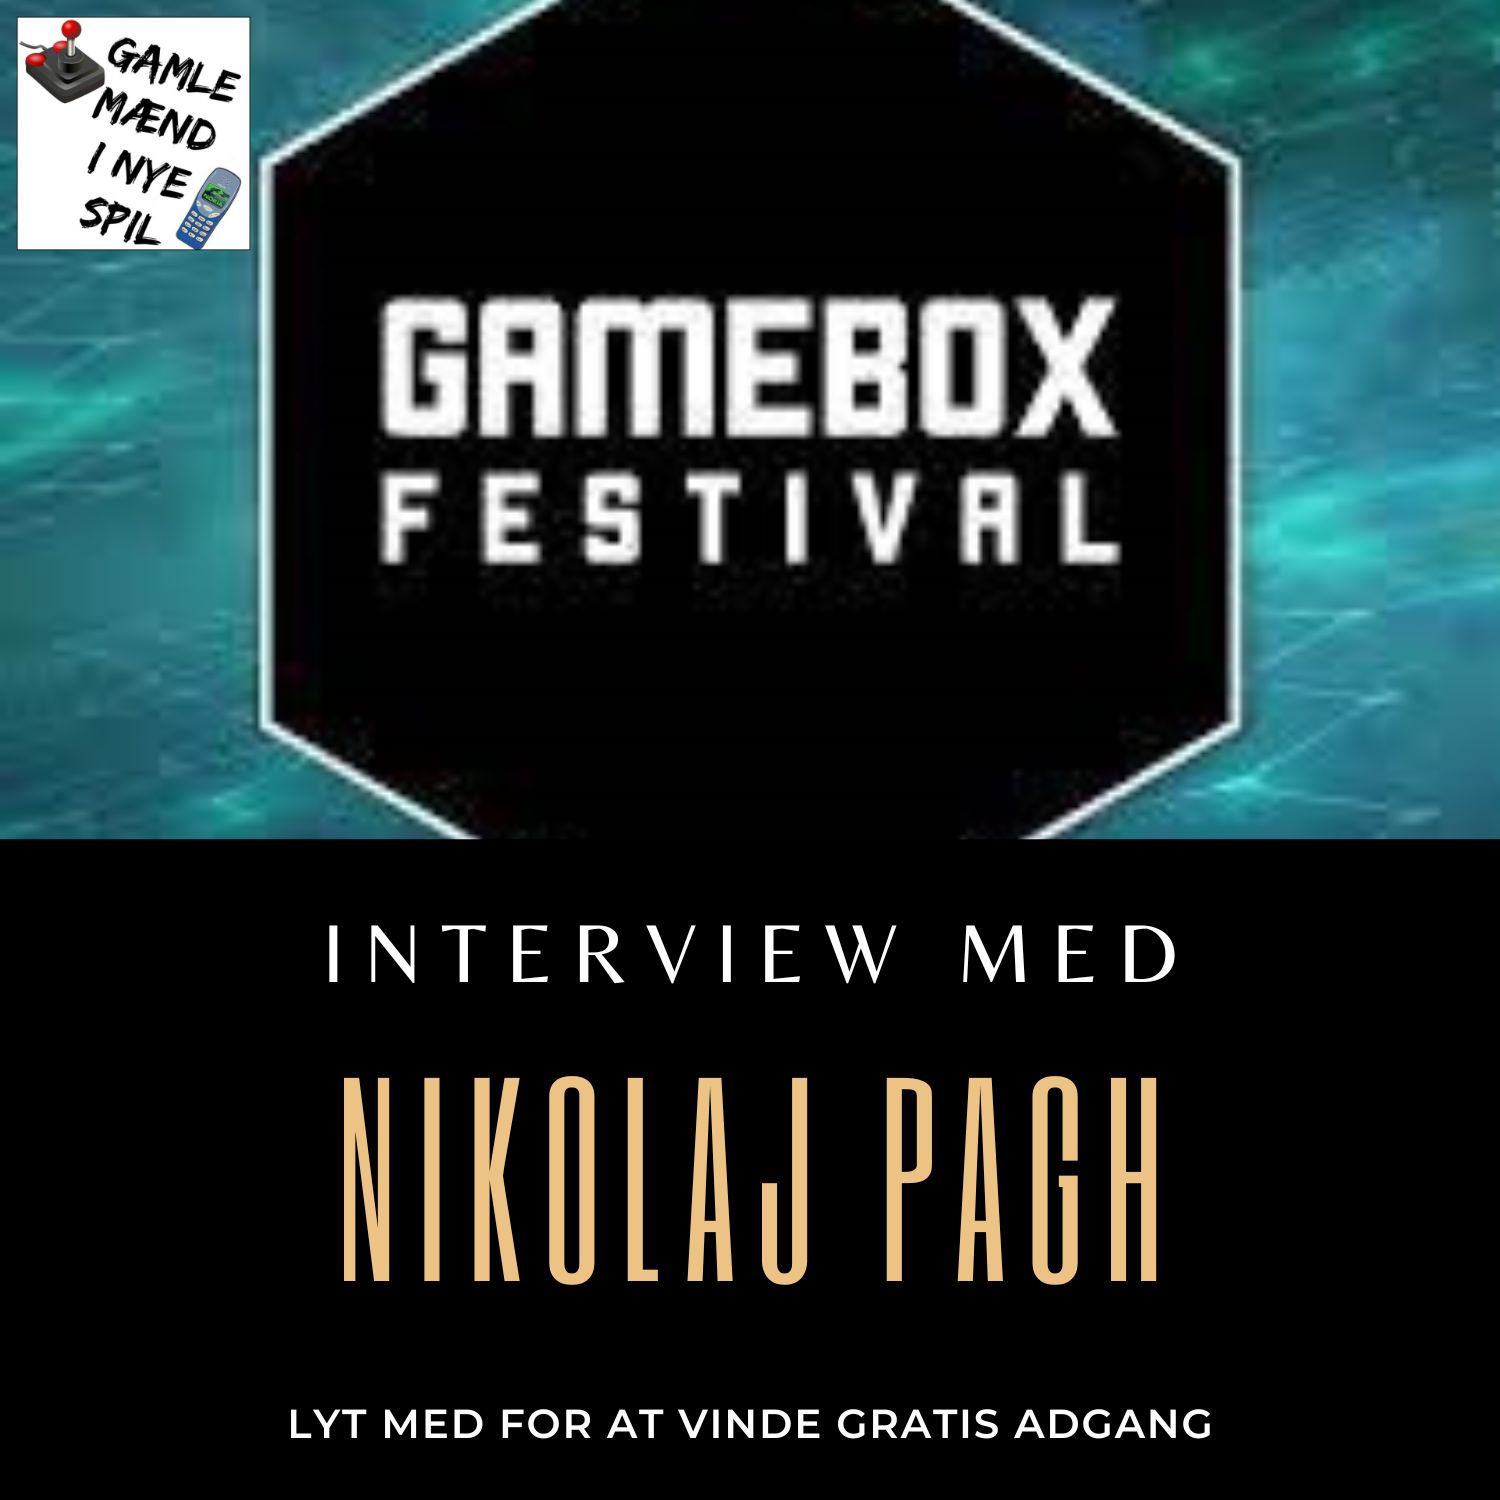 Gamebox Festival og interview med Nikolaj Pagh